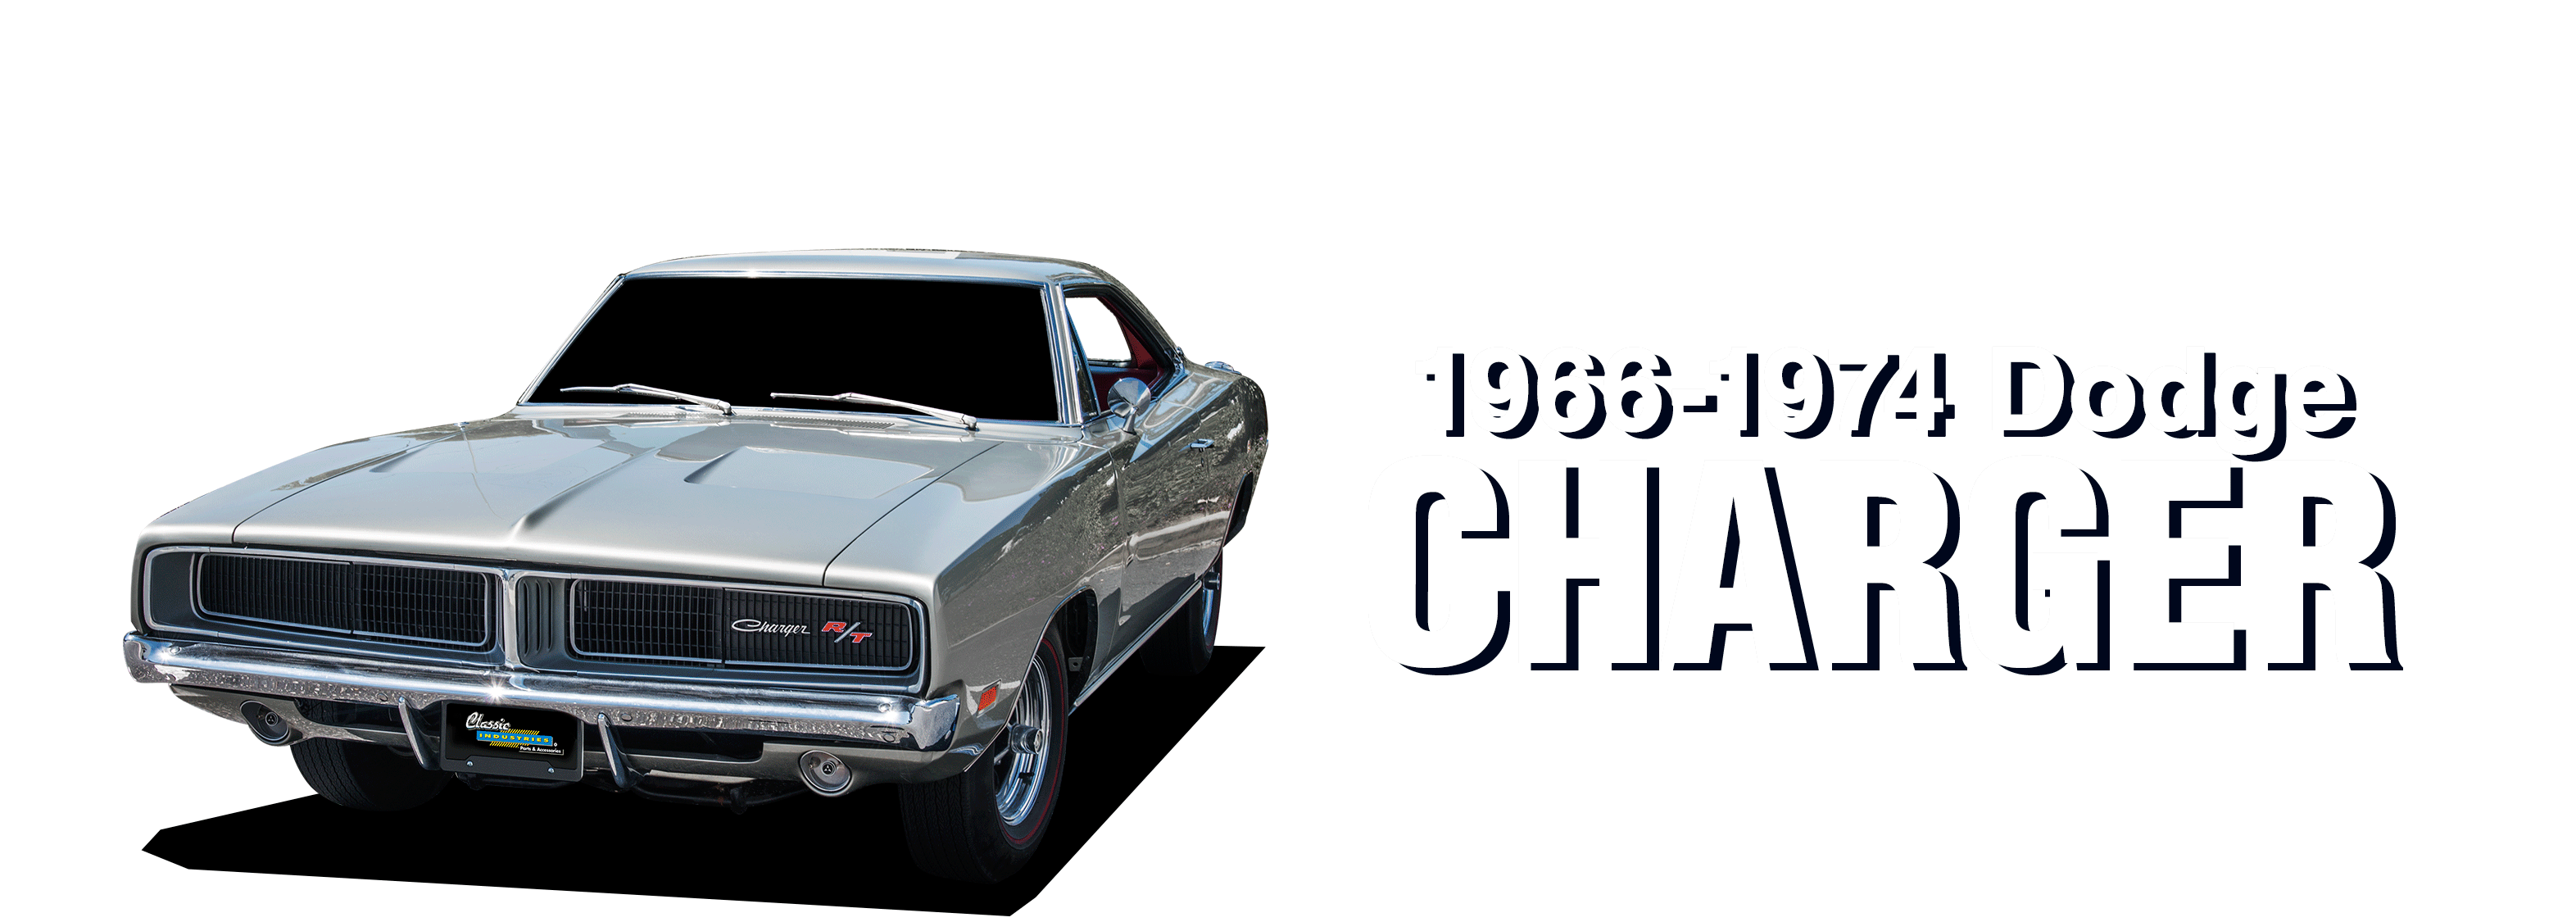 Dodge-Charger-vehicle-desktop